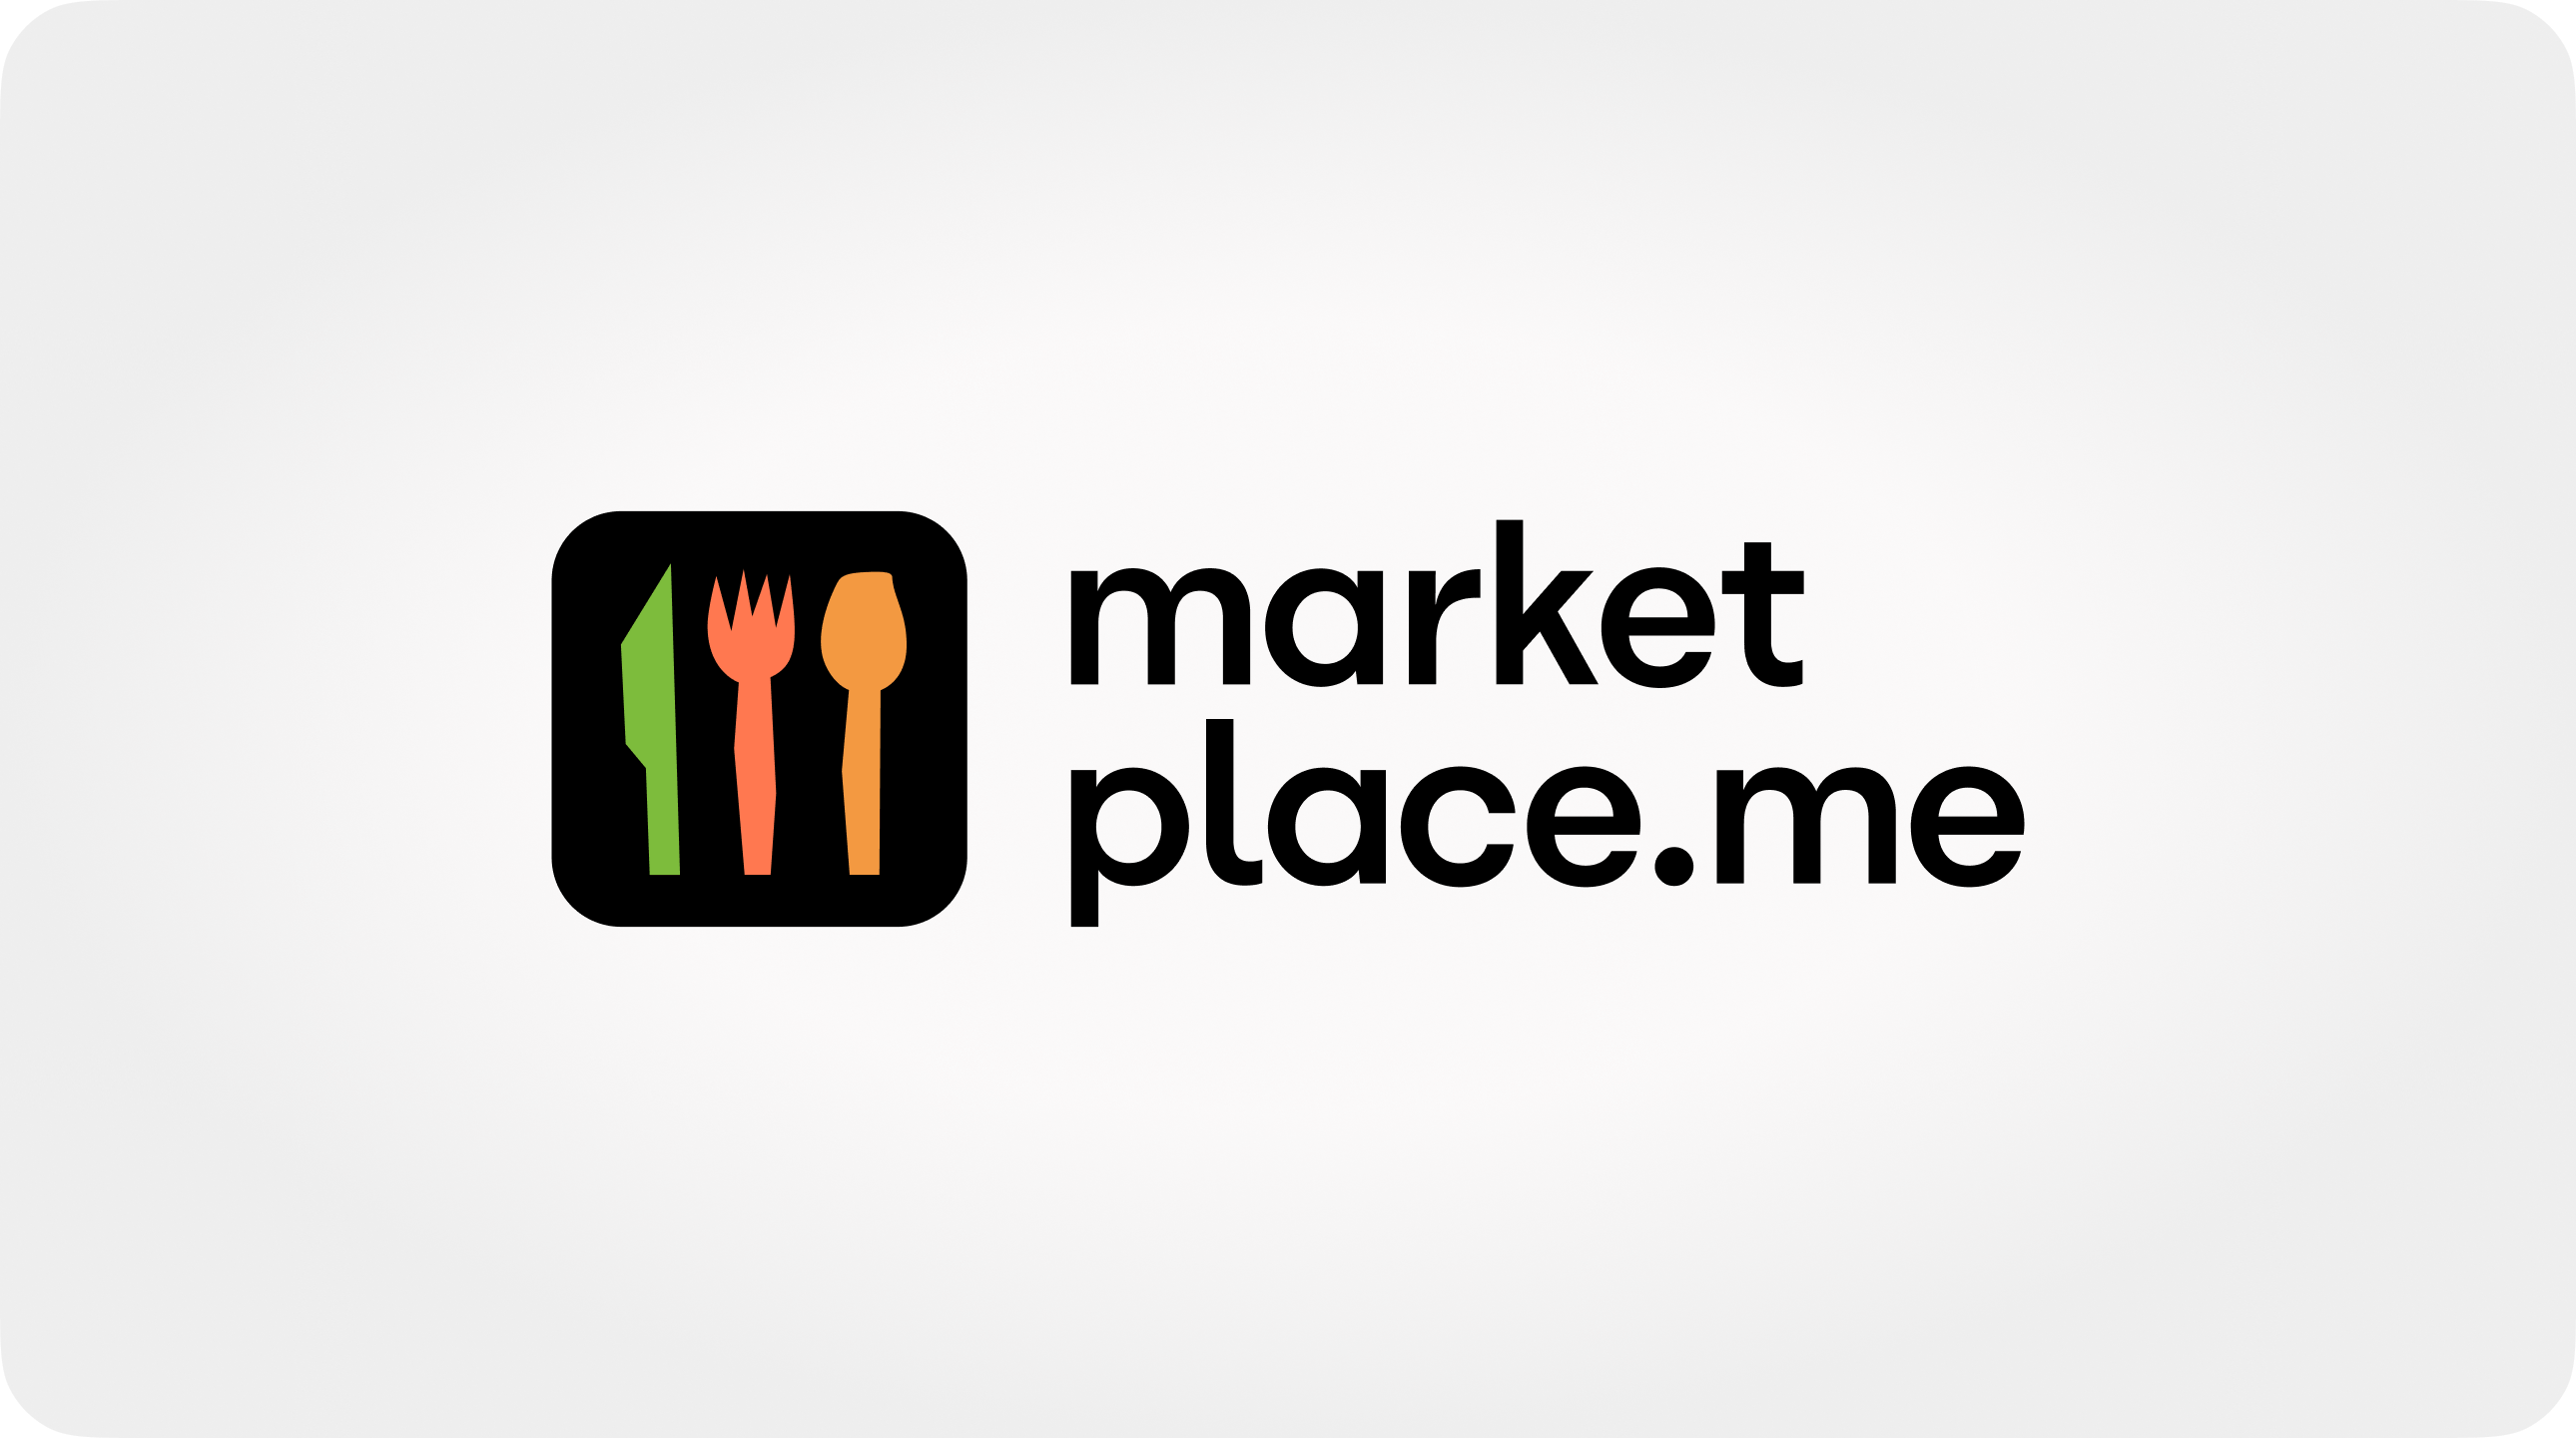 Дизайн и разработка сайта для «Marketplace» — сети ресторанов с открытой кухней